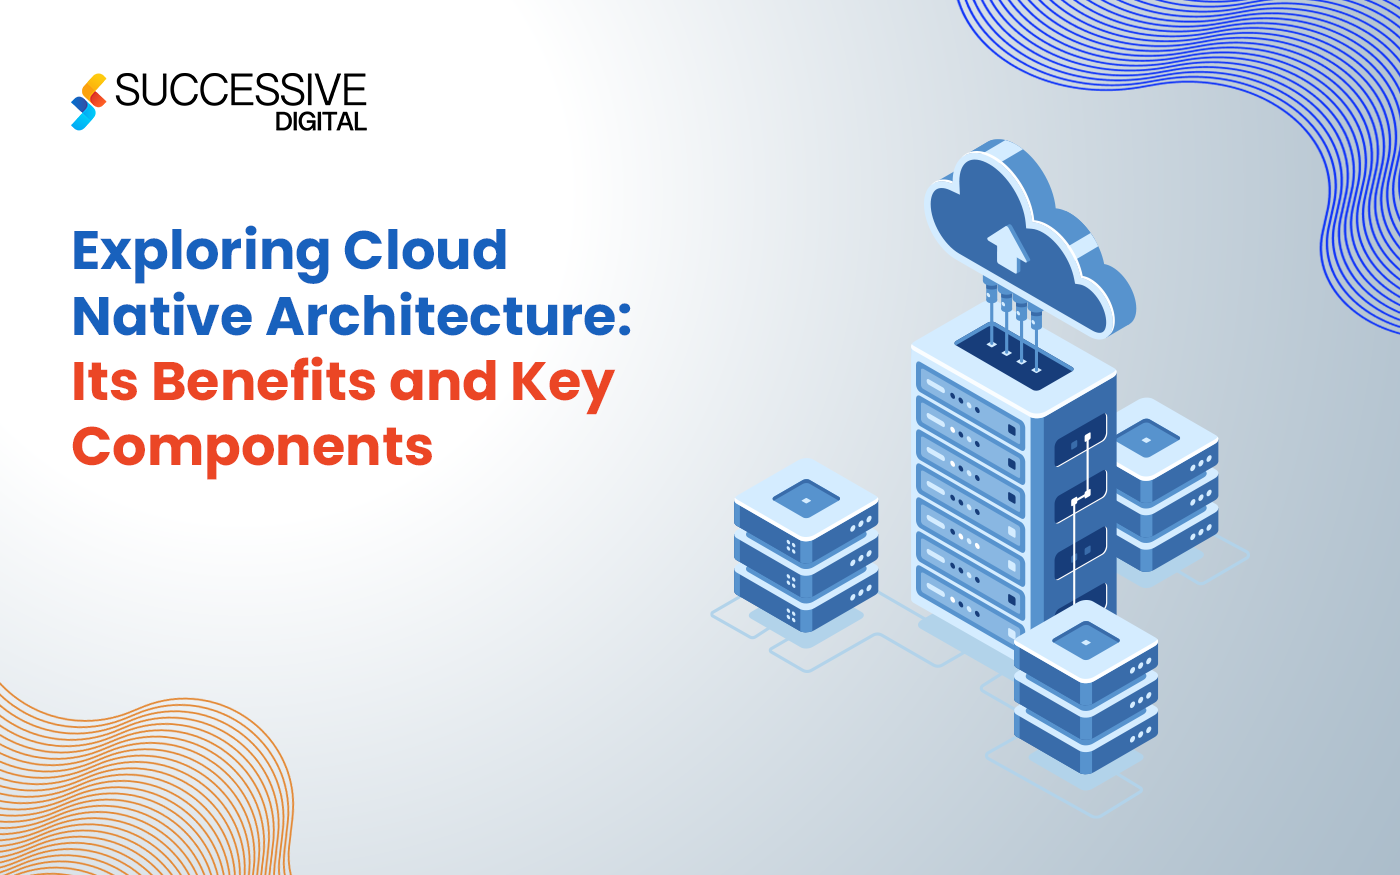 Cloud Native Architecture Blog Series Part 1 – Exploring Cloud Native Architecture: Its Benefits And Key Components